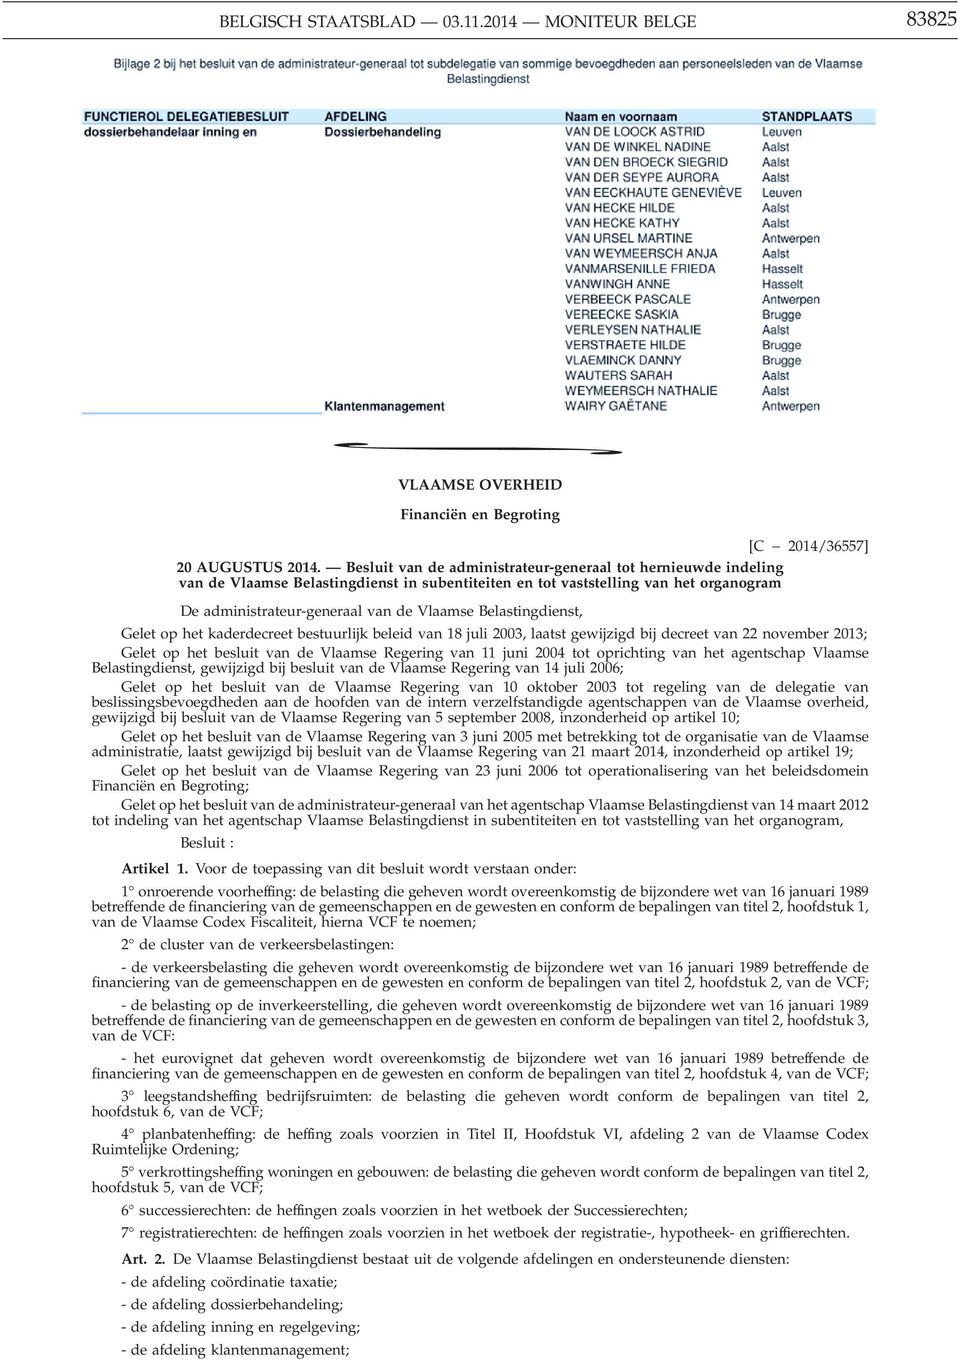 Belastingdienst, Gelet op het kaderdecreet bestuurlijk beleid van 18 juli 2003, laatst gewijzigd bij decreet van 22 november 2013; Gelet op het besluit van de Vlaamse Regering van 11 juni 2004 tot